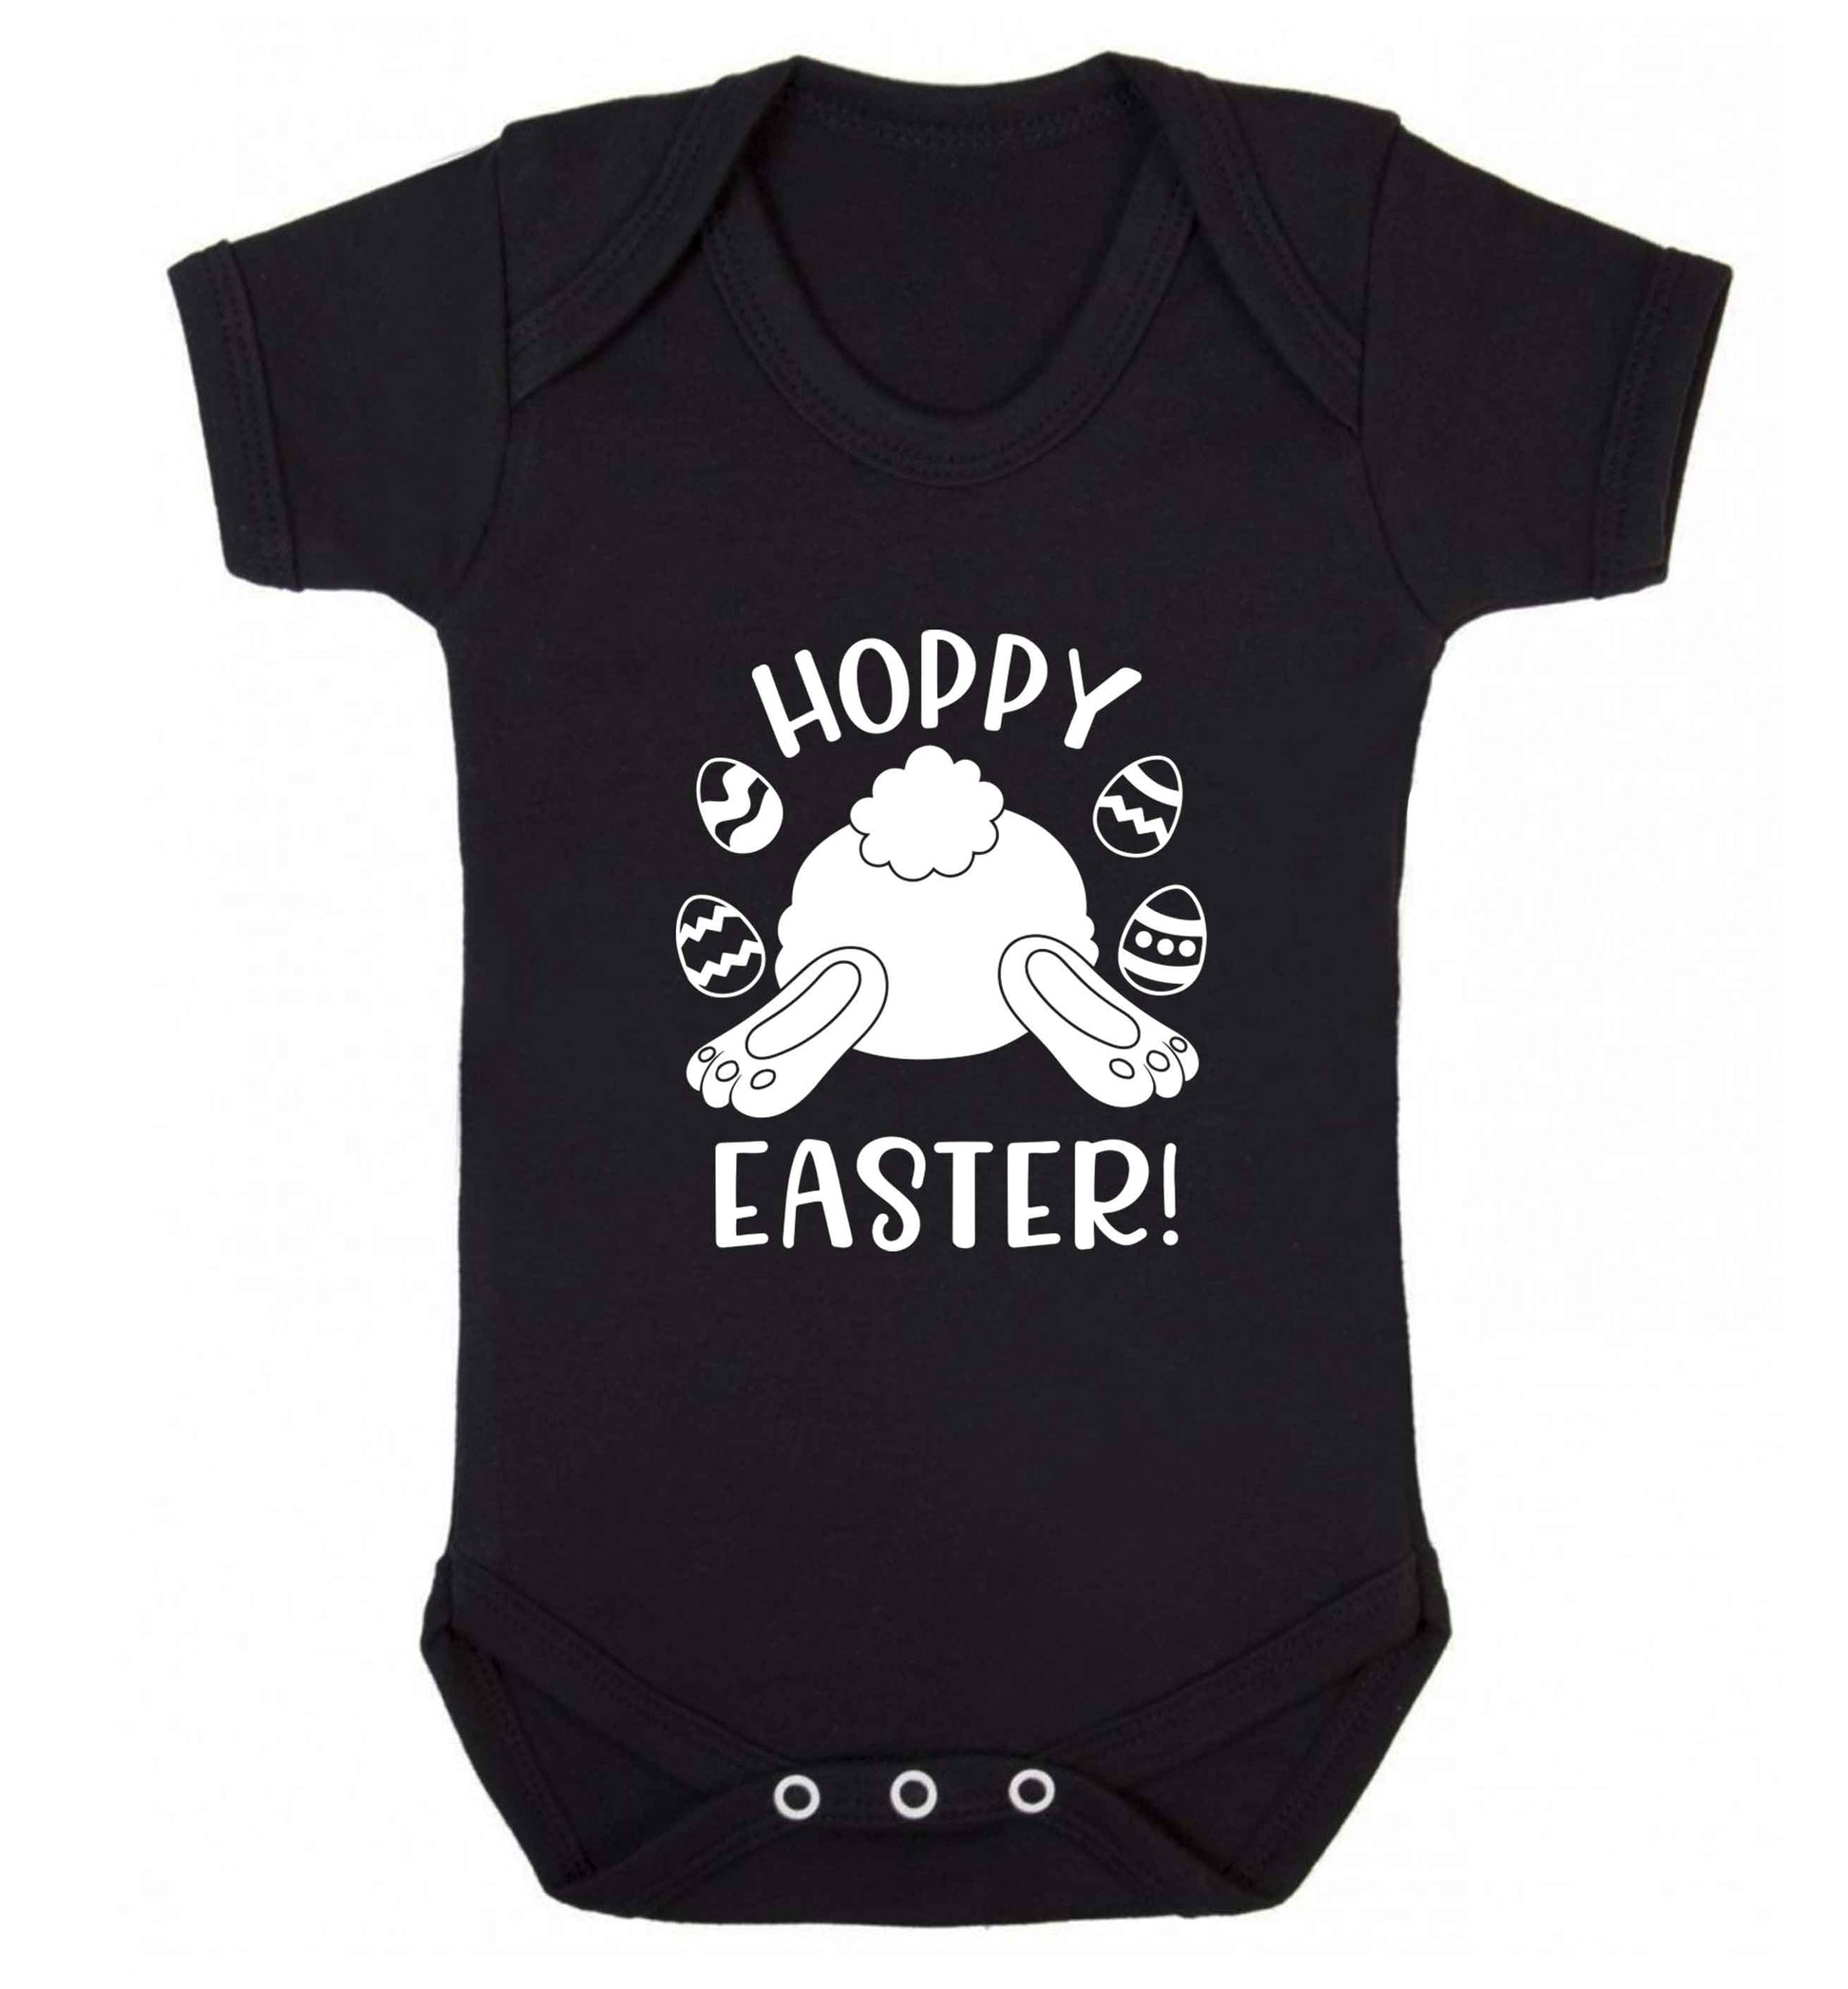 Hoppy Easter baby vest black 18-24 months